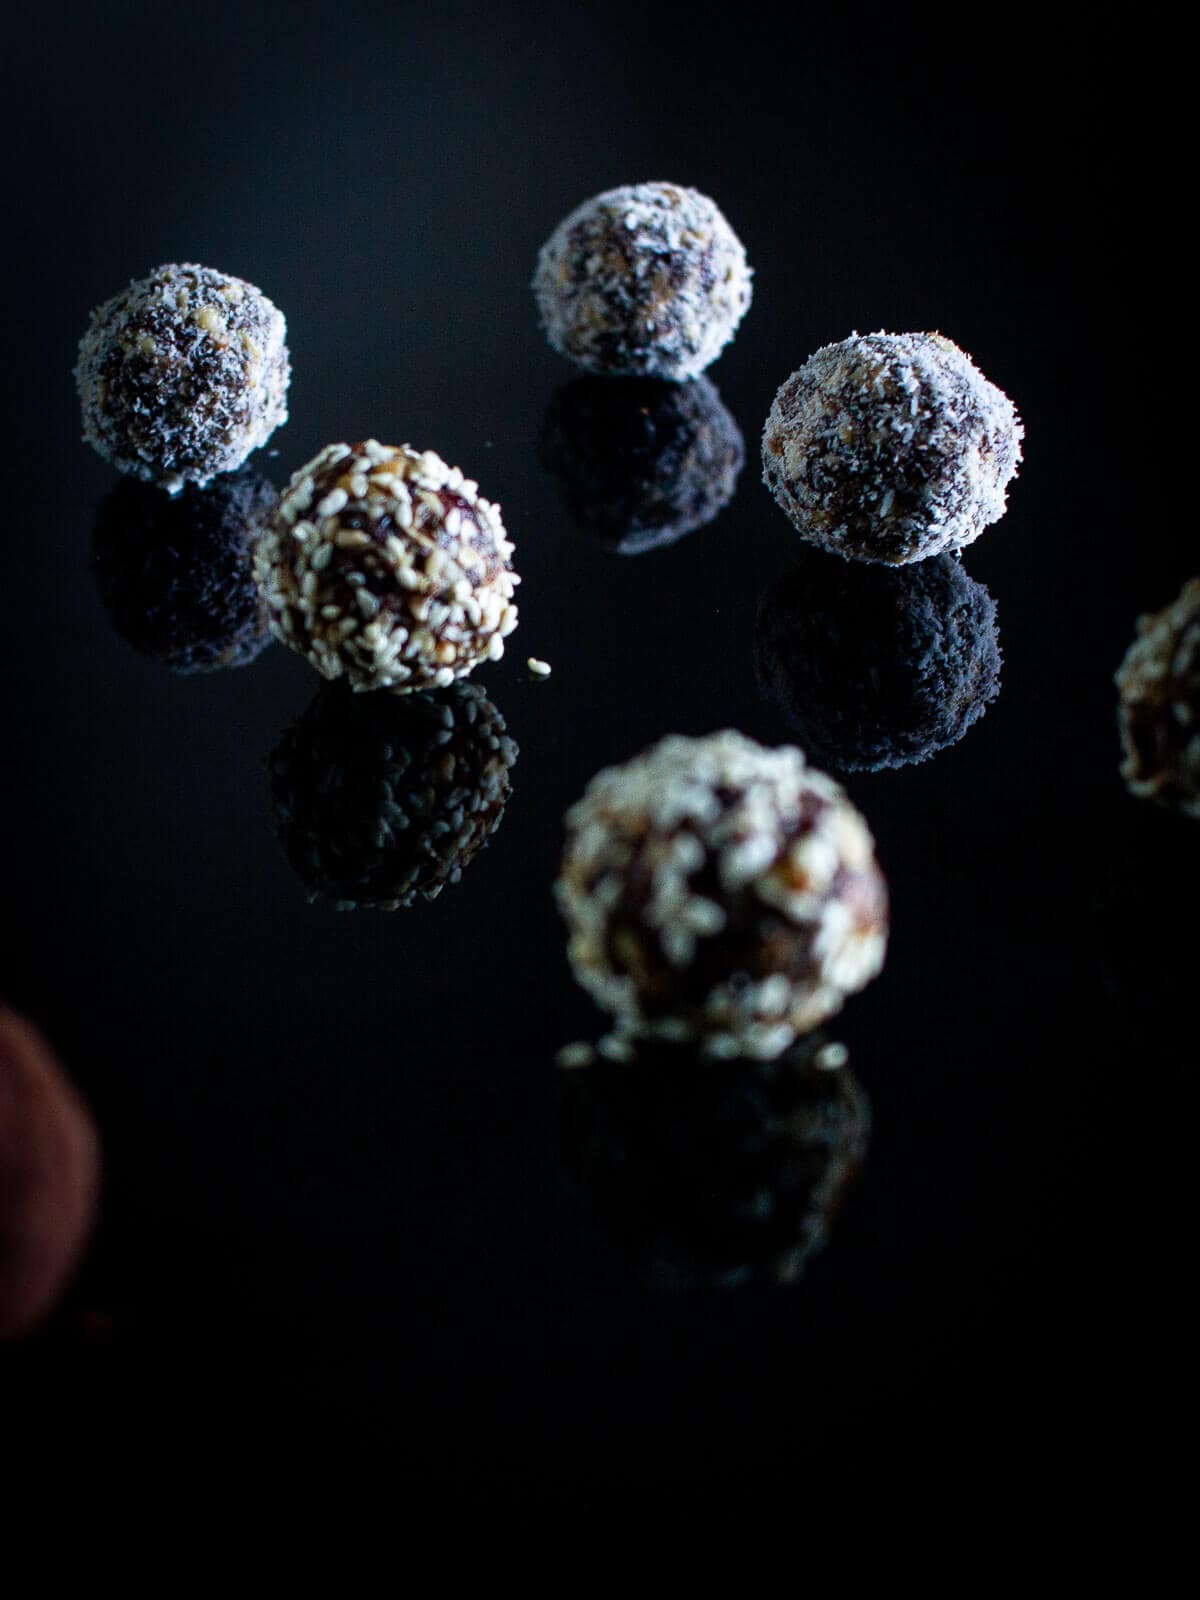 power balls covered in shredded coconut